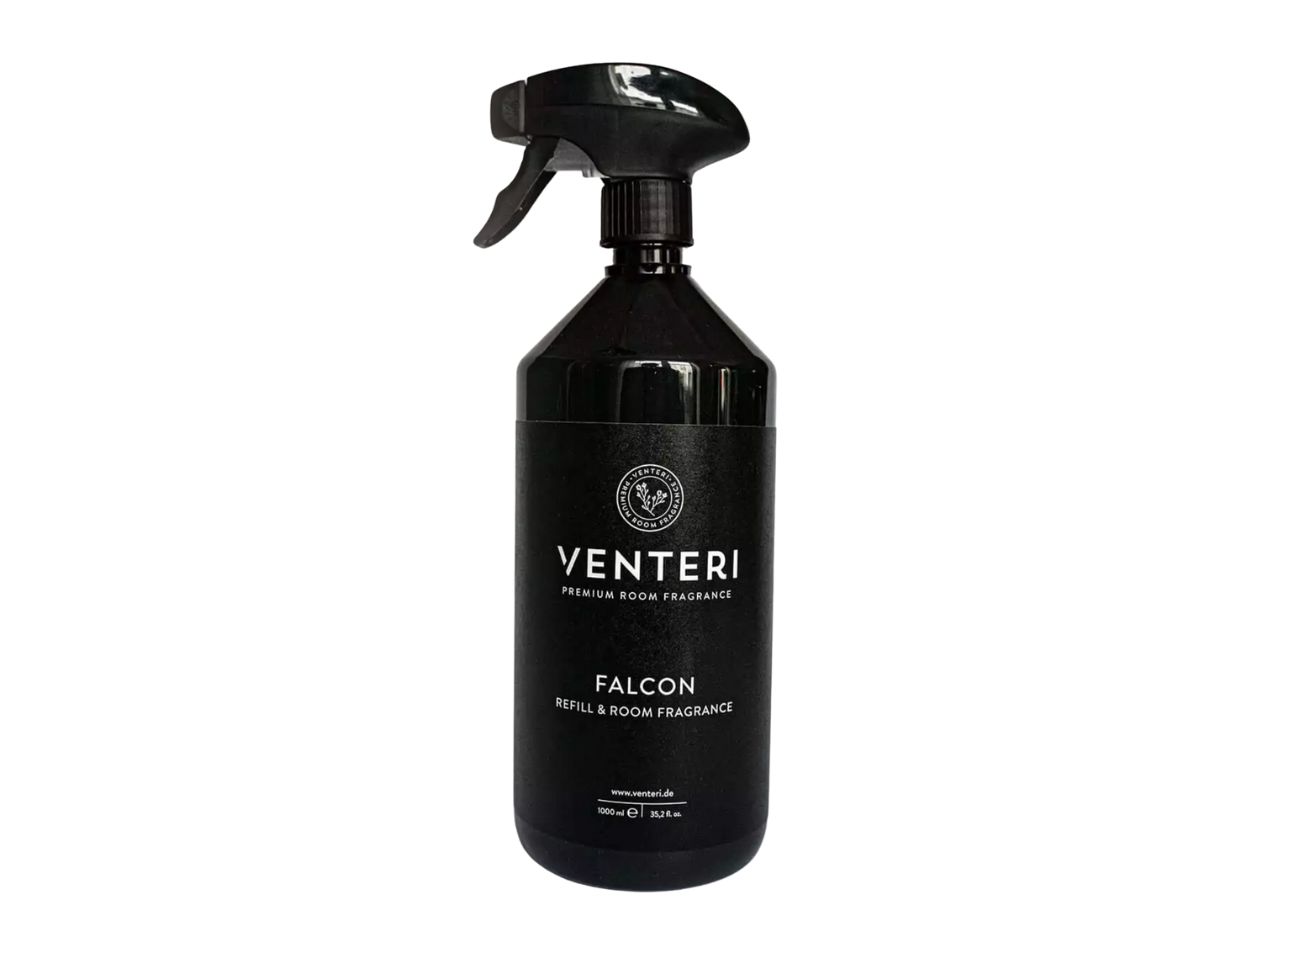 Venteri Refill & Room Spray